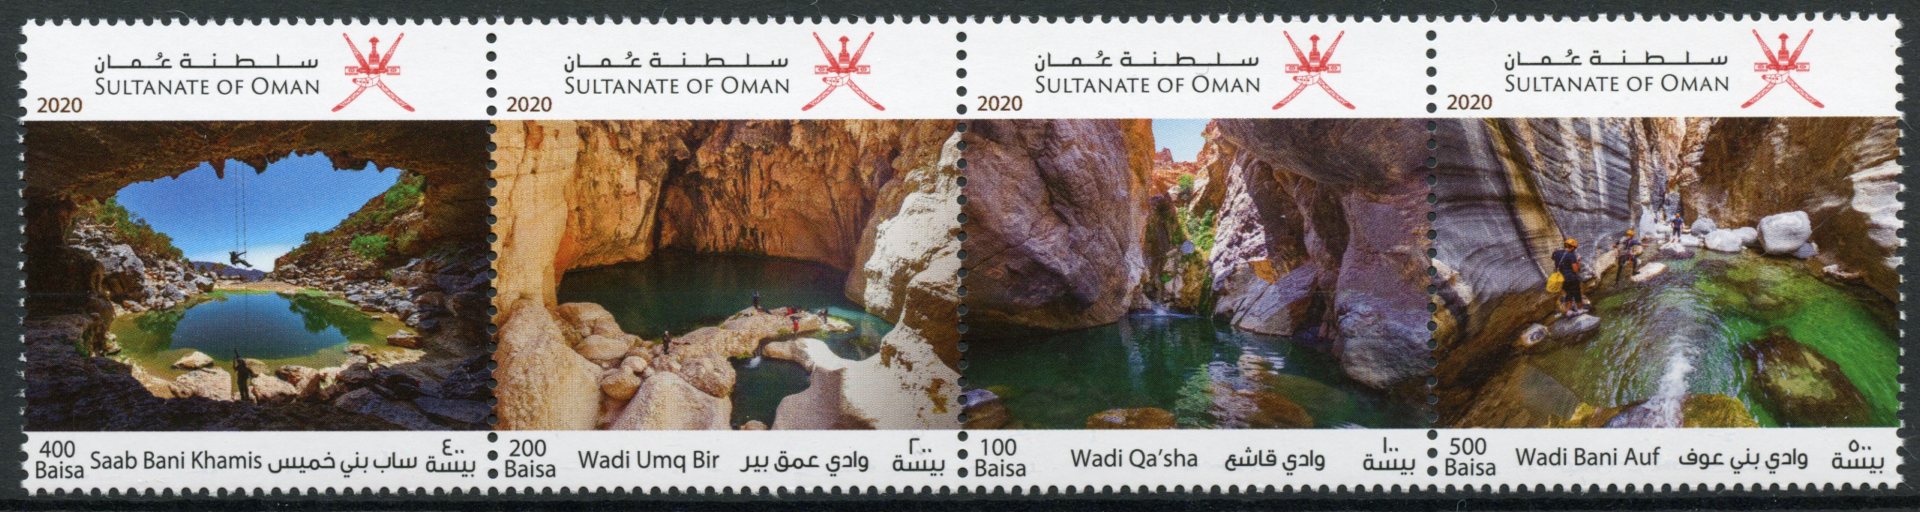 Oman 2020 MNH Adventure Tourism Stamps Caves Landscapes 4v Strip